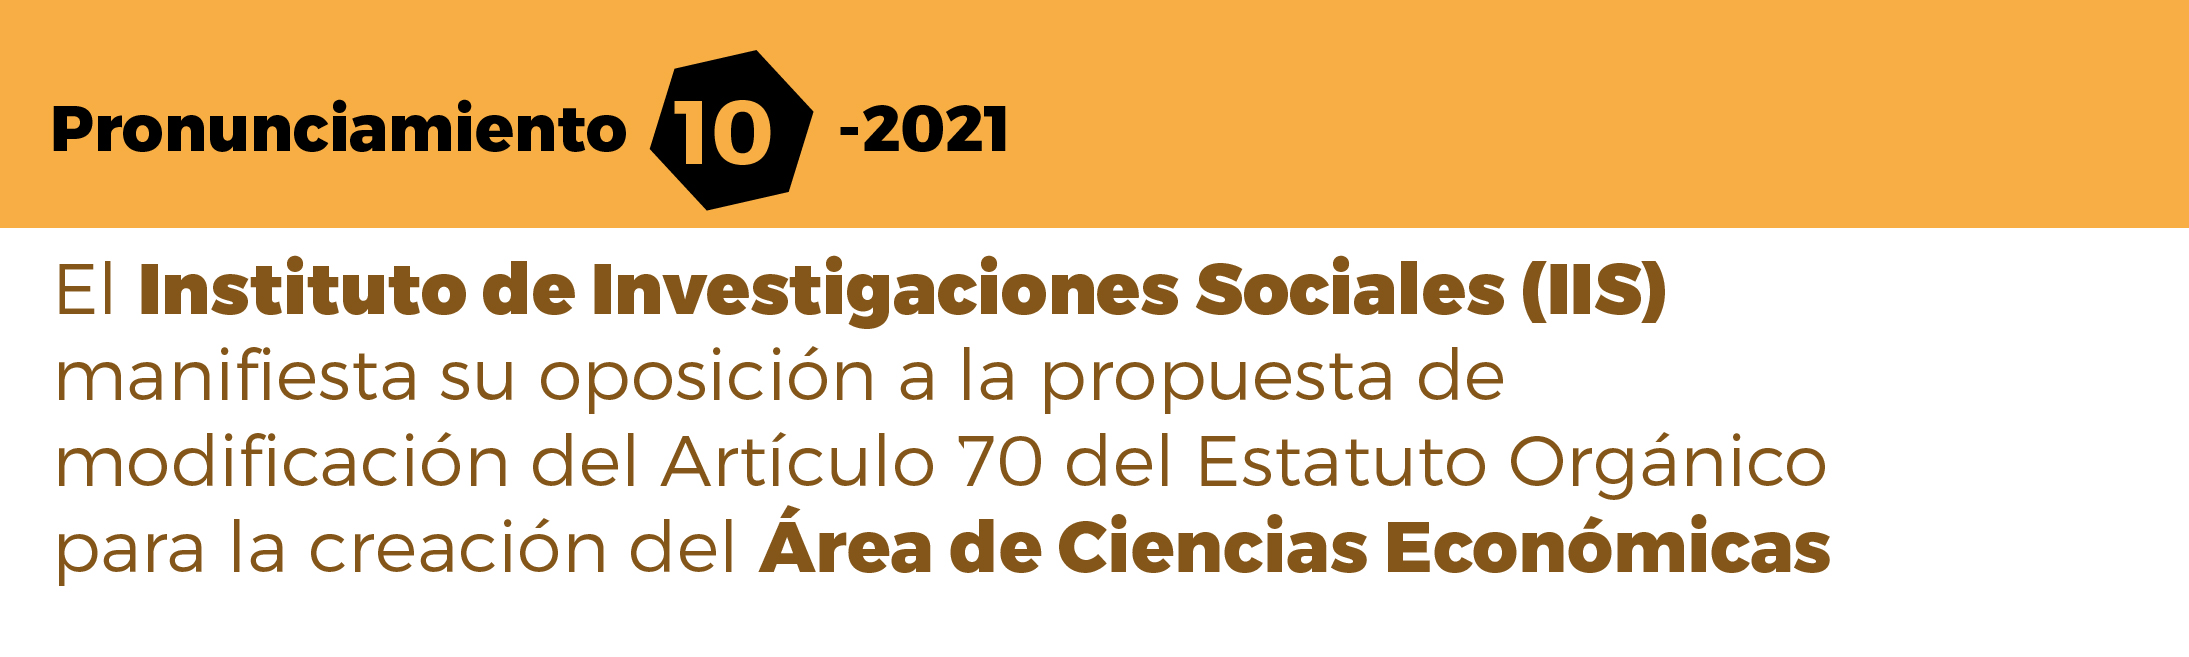 El Instituto de Investigaciones Sociales (IIS) manifiesta su oposición a la propuesta de modificación del Artículo 70 del Estatuto Orgánico para la creación del Área de Ciencias Económicas